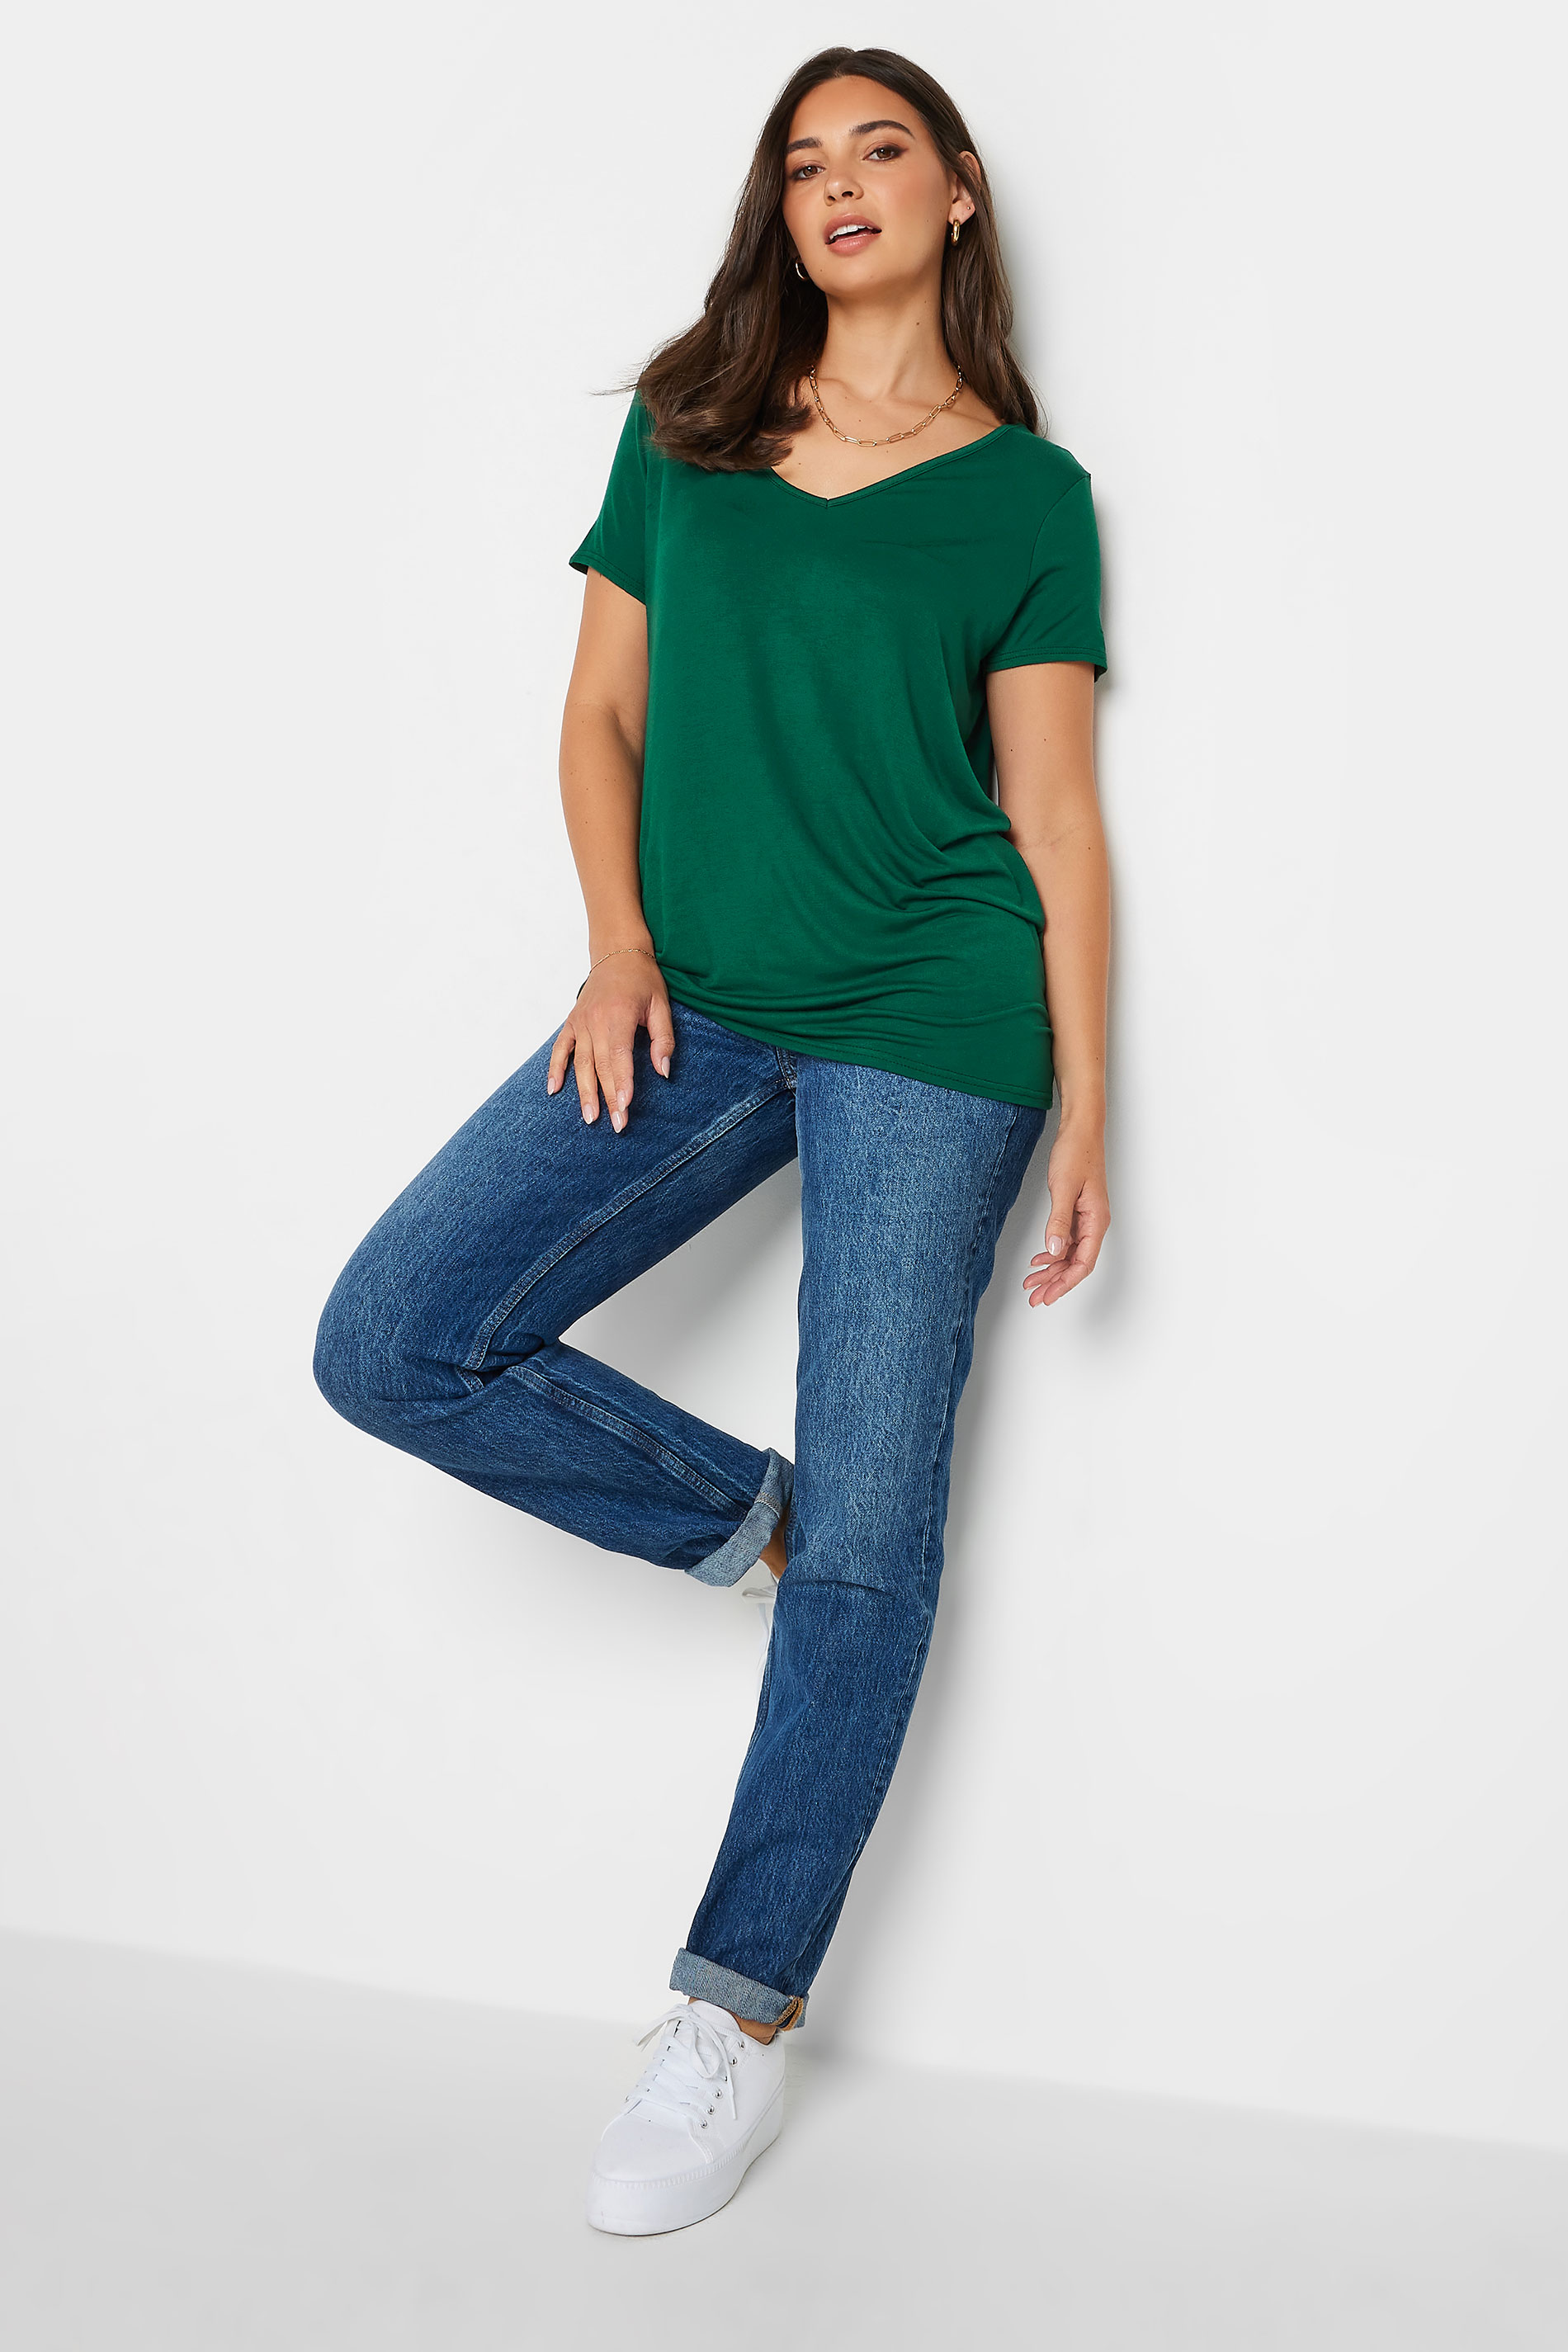 LTS Tall Women's Dark Green V-Neck T-Shirt | Long Tall Sally 2